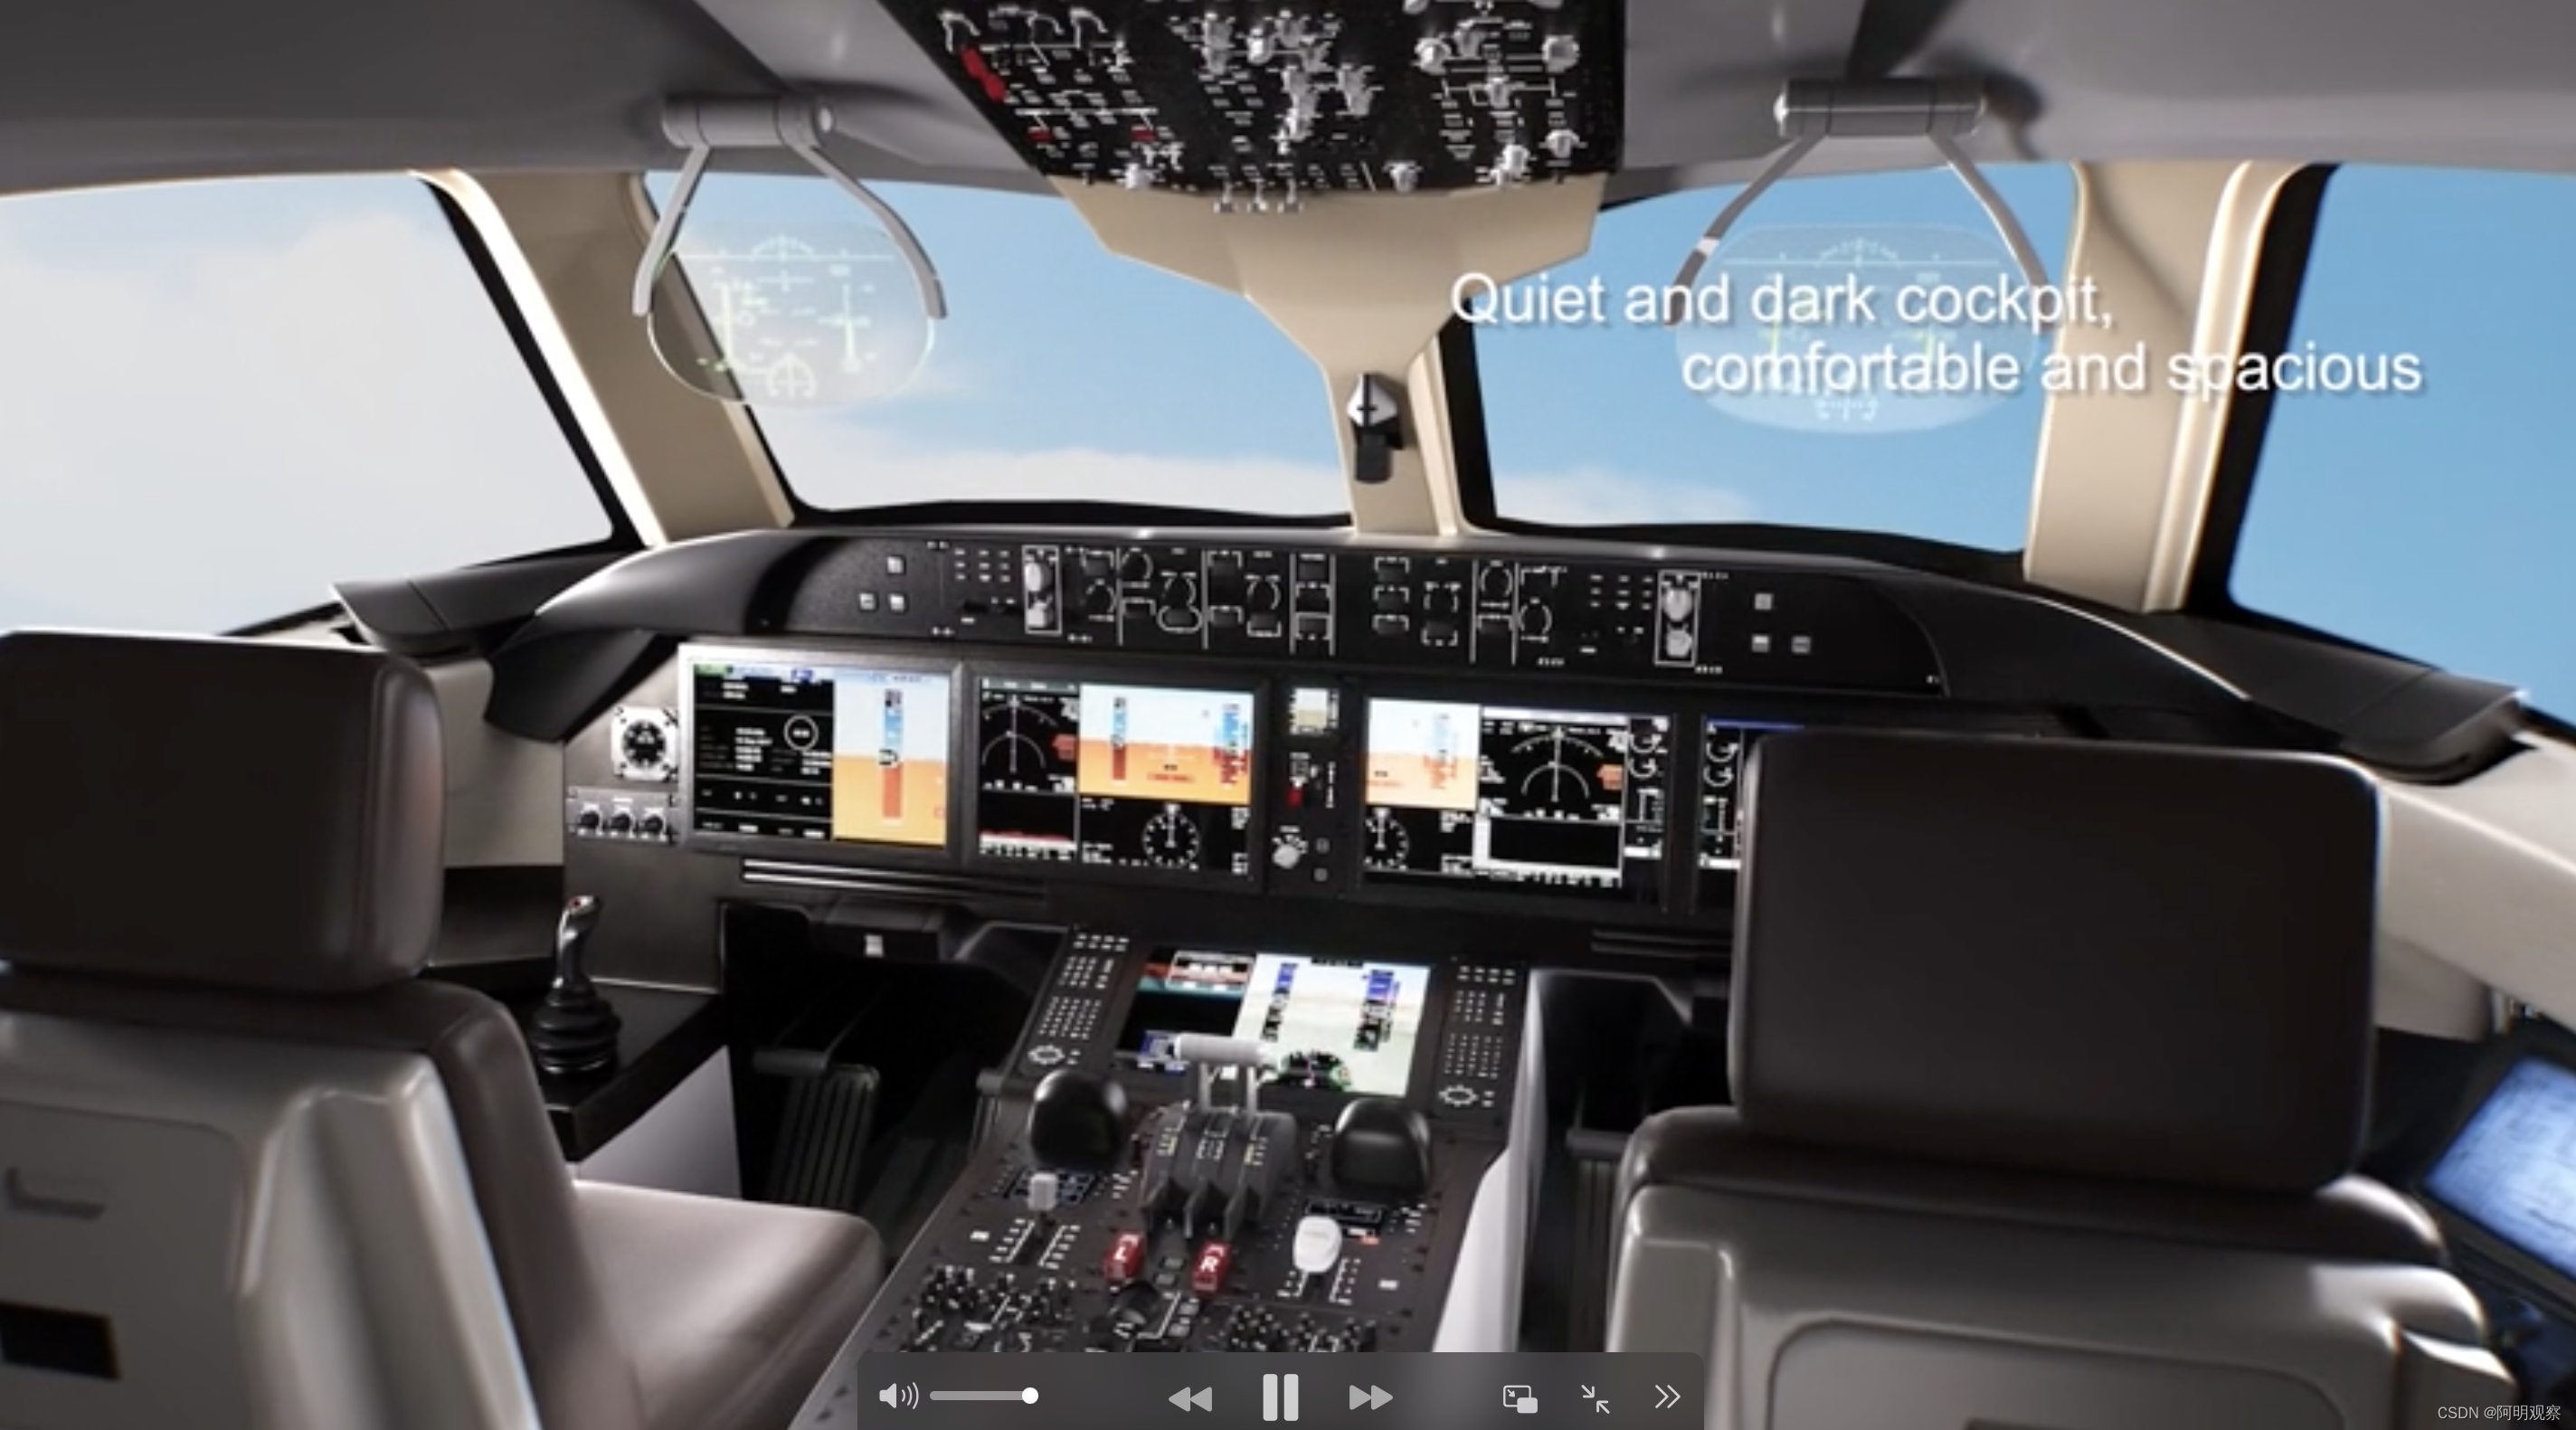 c919驾驶舱里面的大屏幕,数据显示图形化的感觉,还是非常实用,非常炫